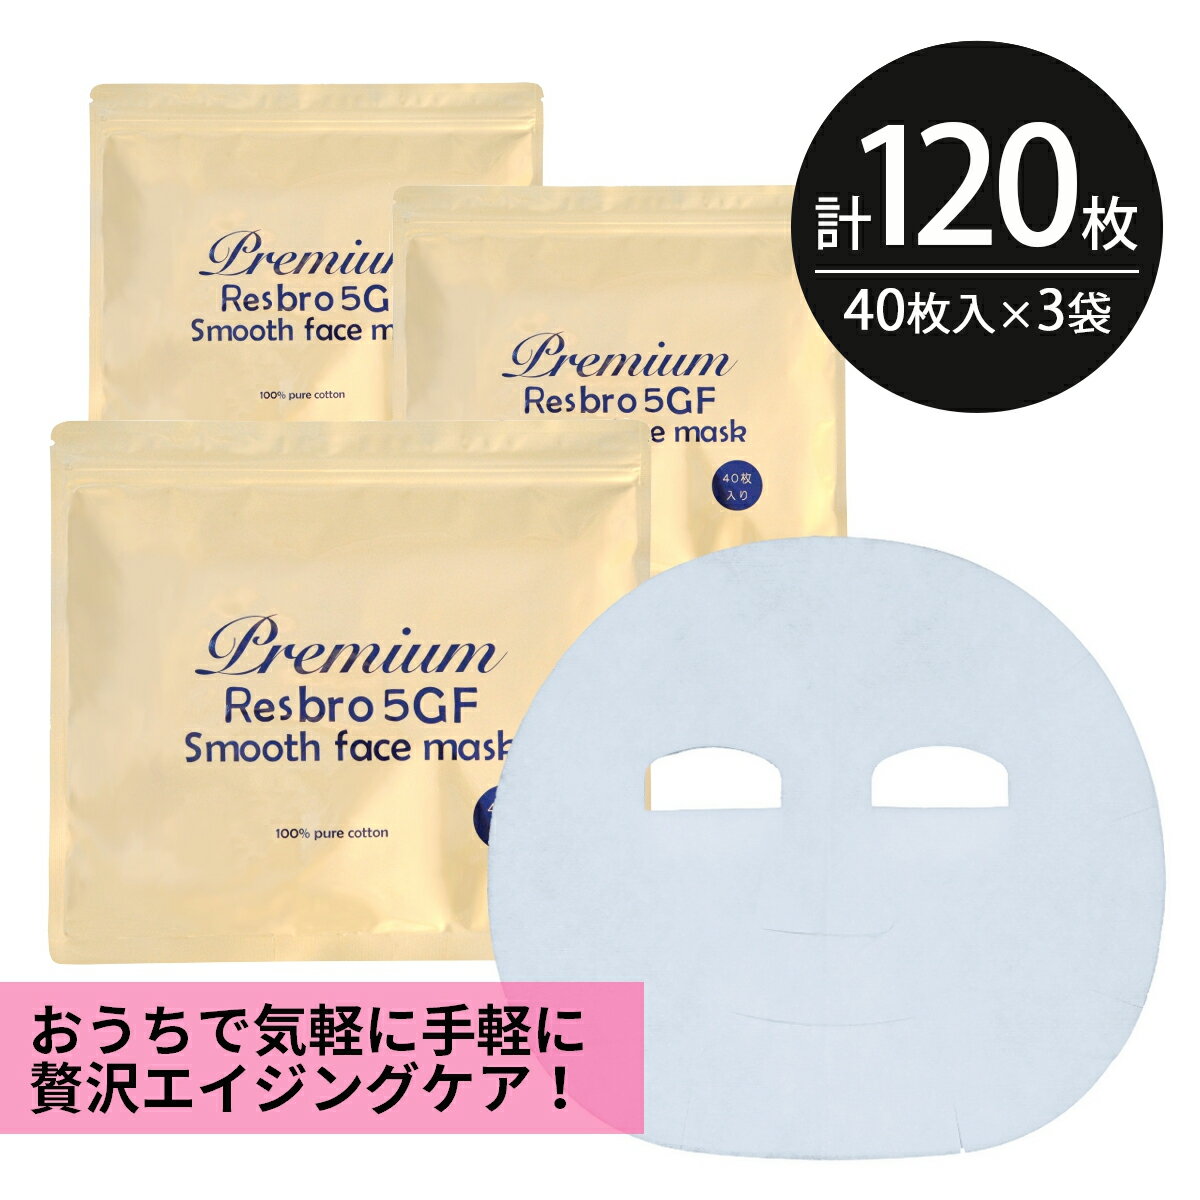 シートマスク パック 120枚Premium Resbro 5GF Smooth Face Mask レスブロ エイジングケア 保湿 大容量 毎日 100枚以上 スキンケア フェイスマスク フェイスパック 顔パック 日本製 サクラビューティーラボ